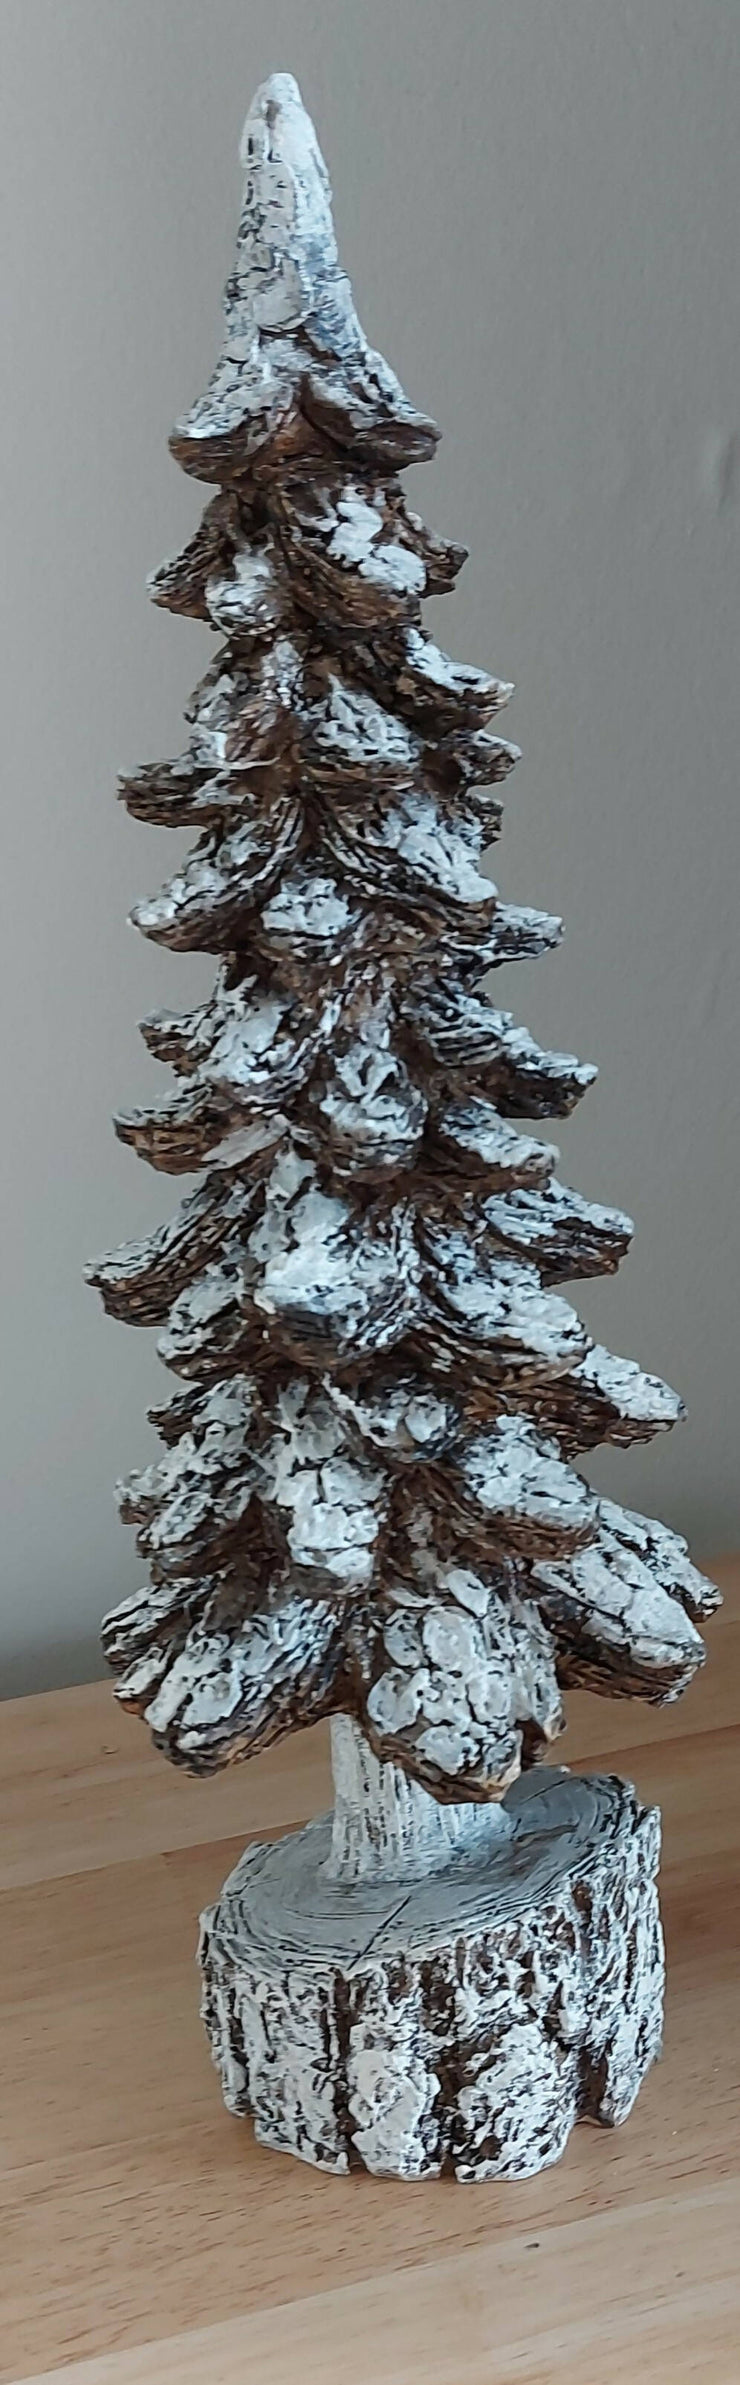 Snowy Woodland Tree Figurine